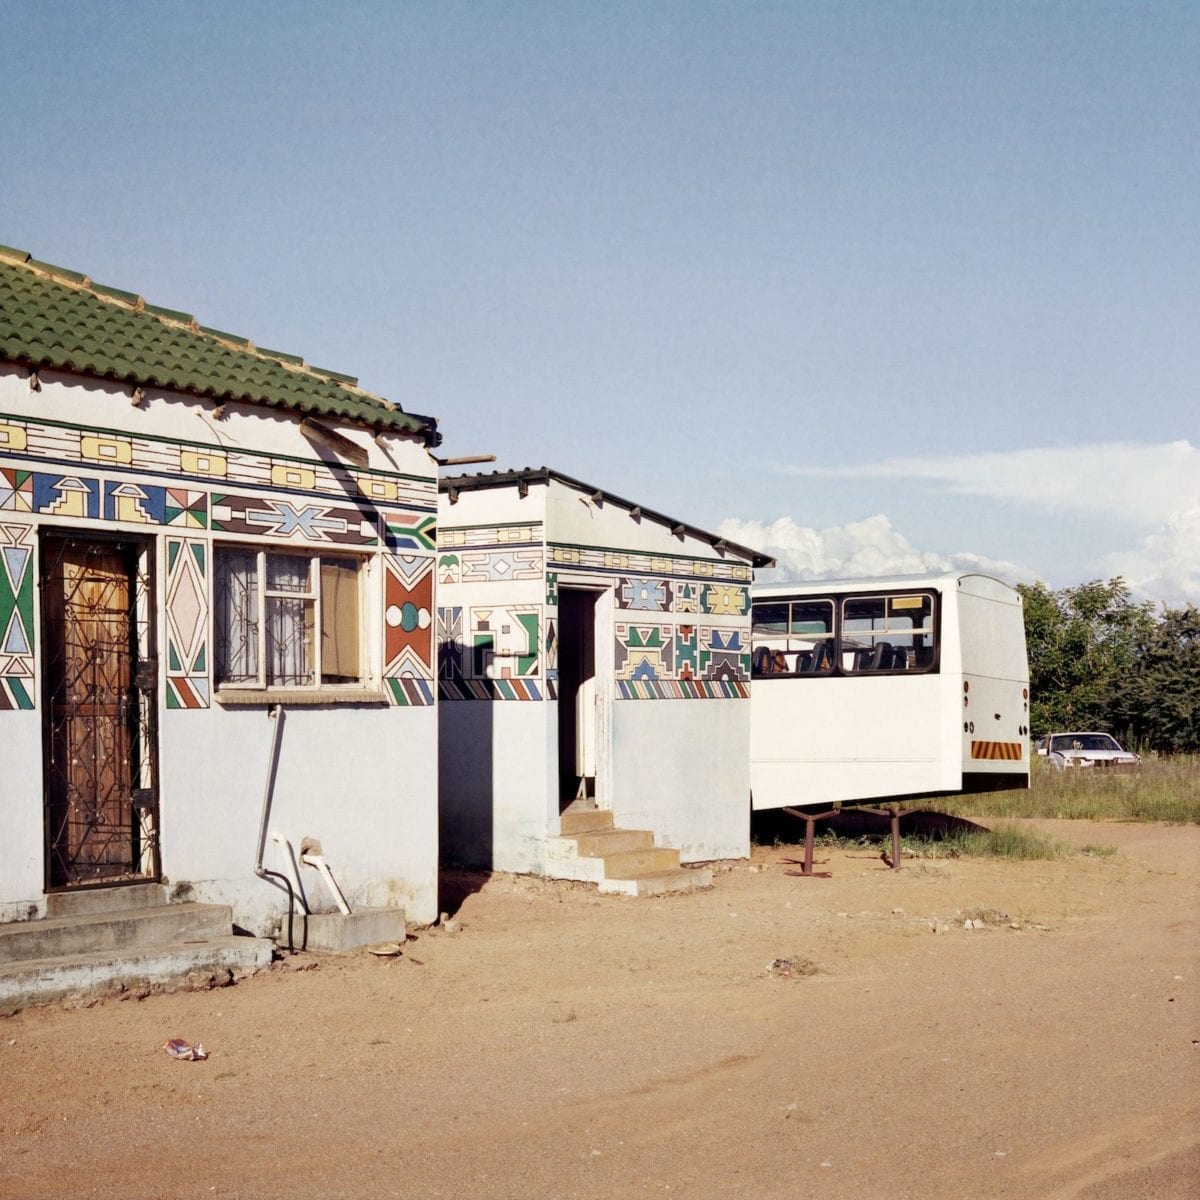 Homeland, Ndeble Art with New South African Flag, Siyabuswa, Former Kwandebele, 2011